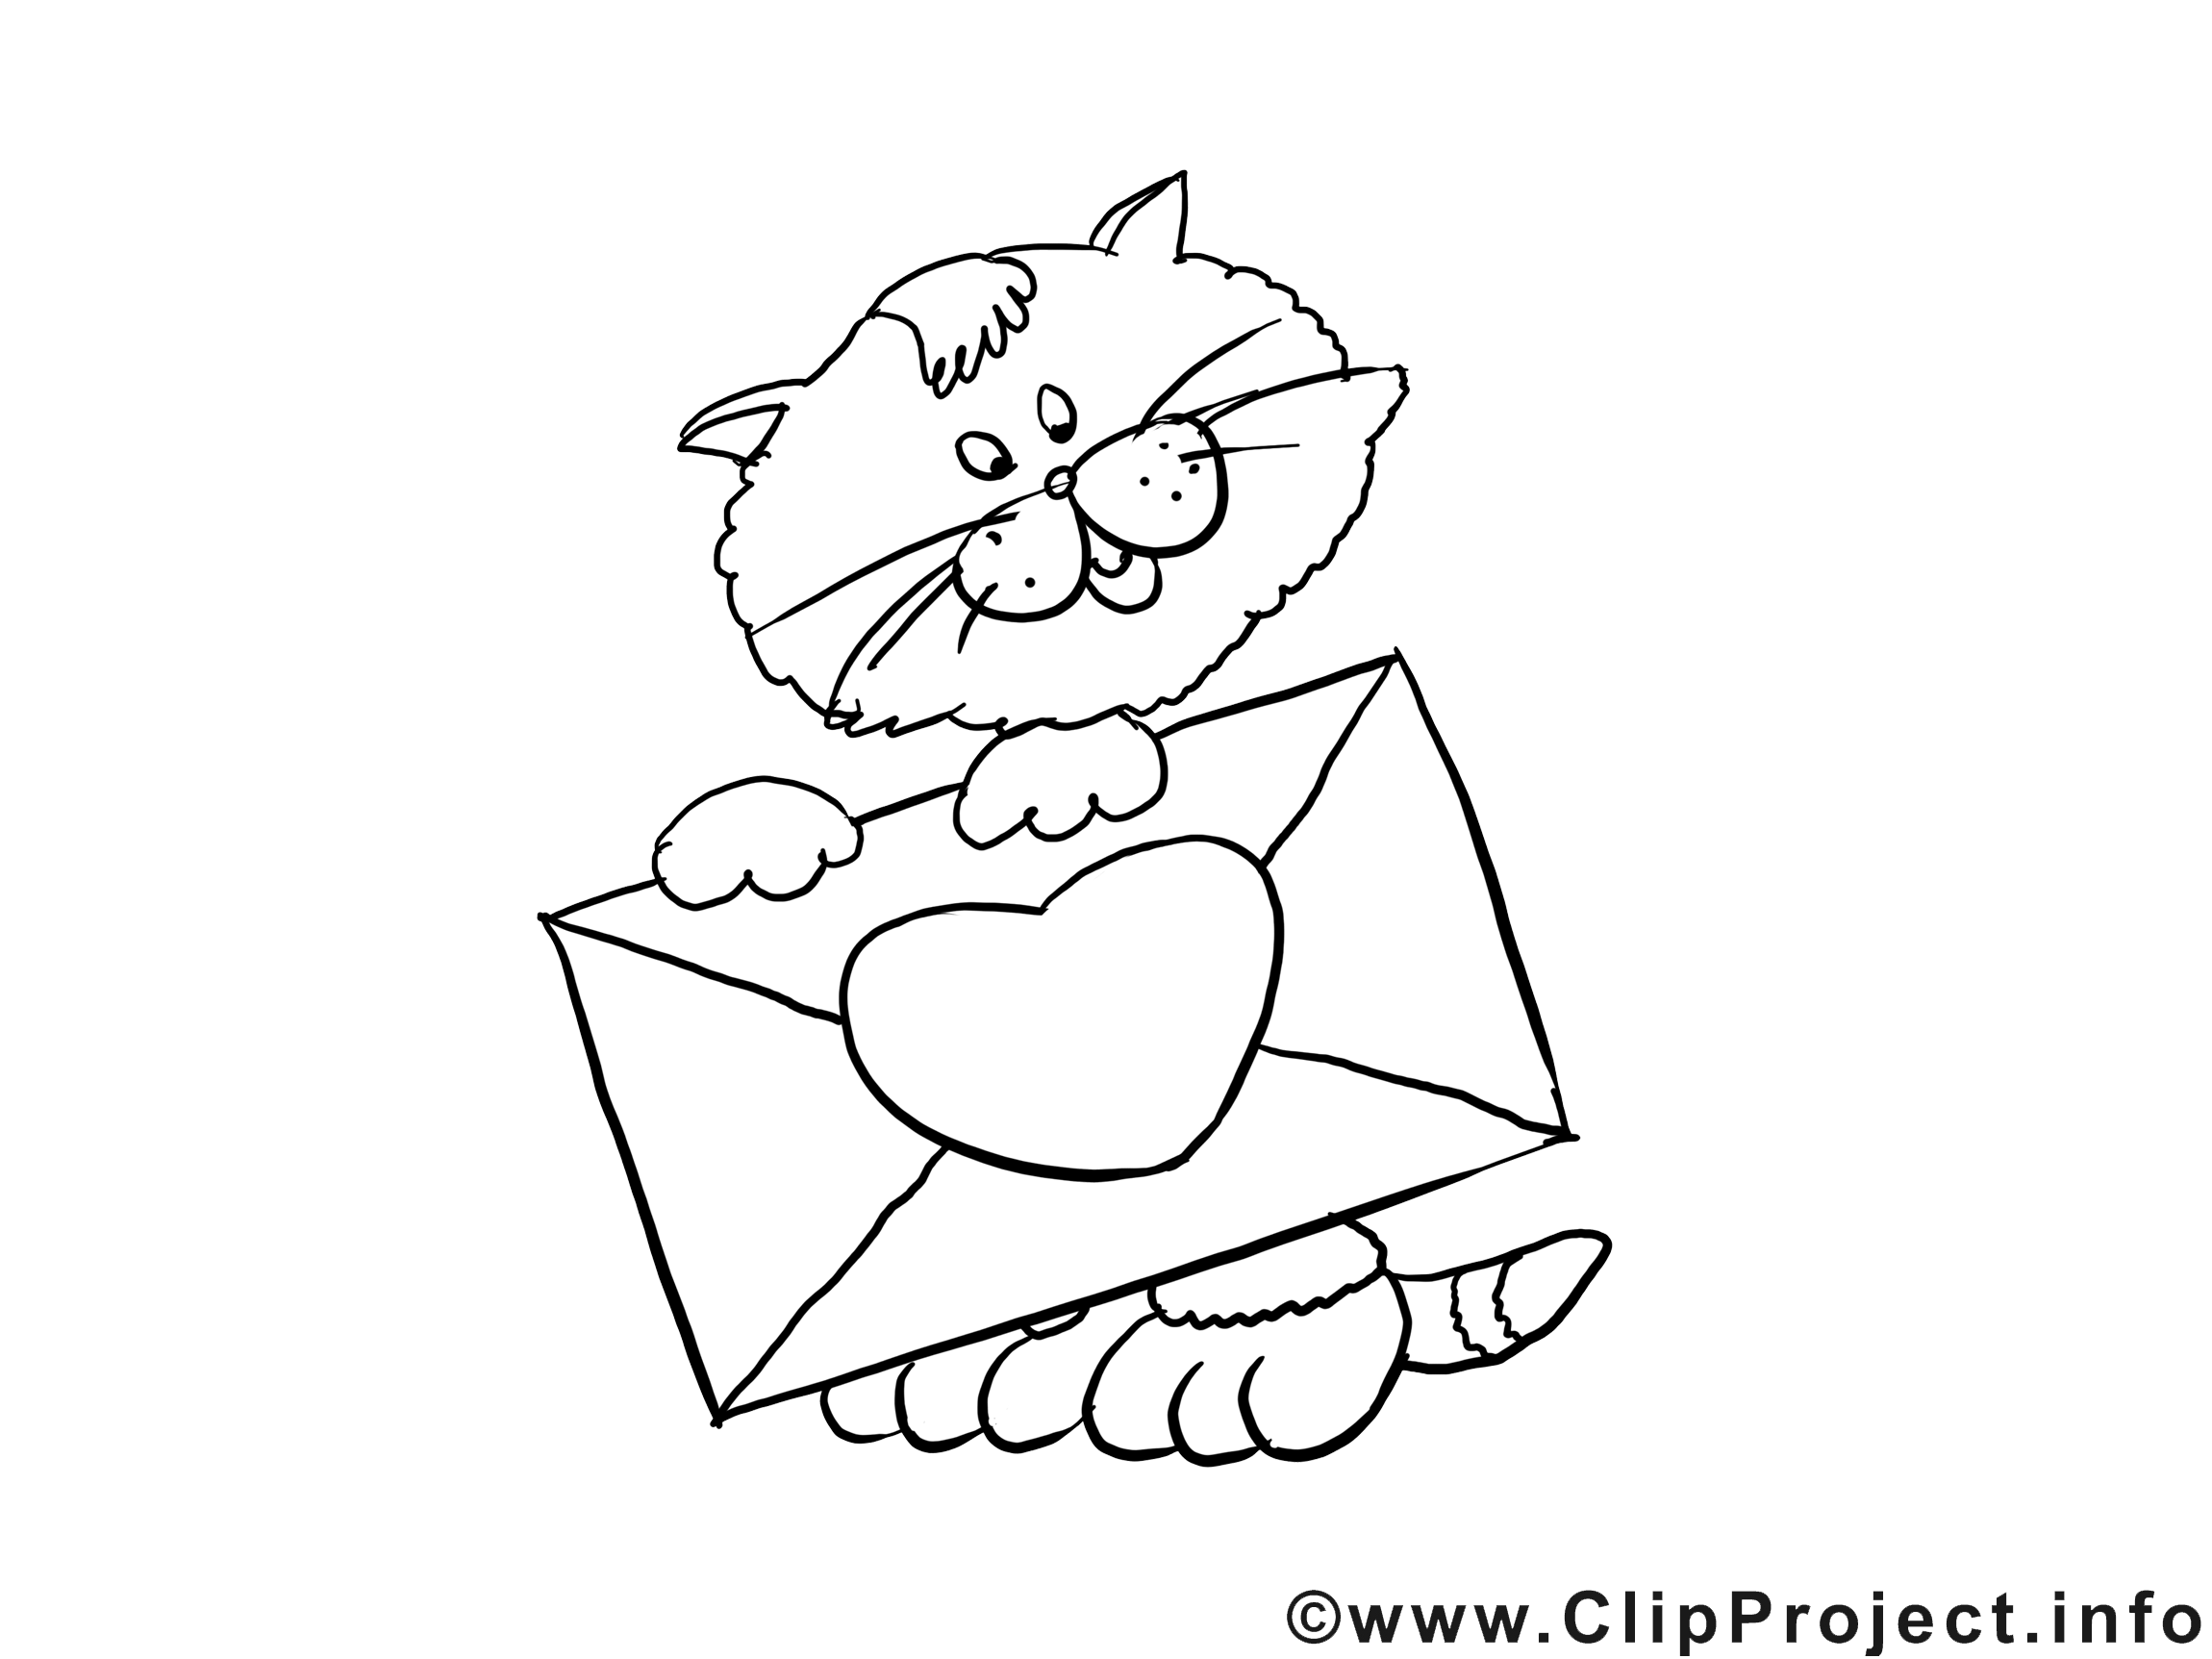 Enveloppe chat clip art à imprimer images gratuites